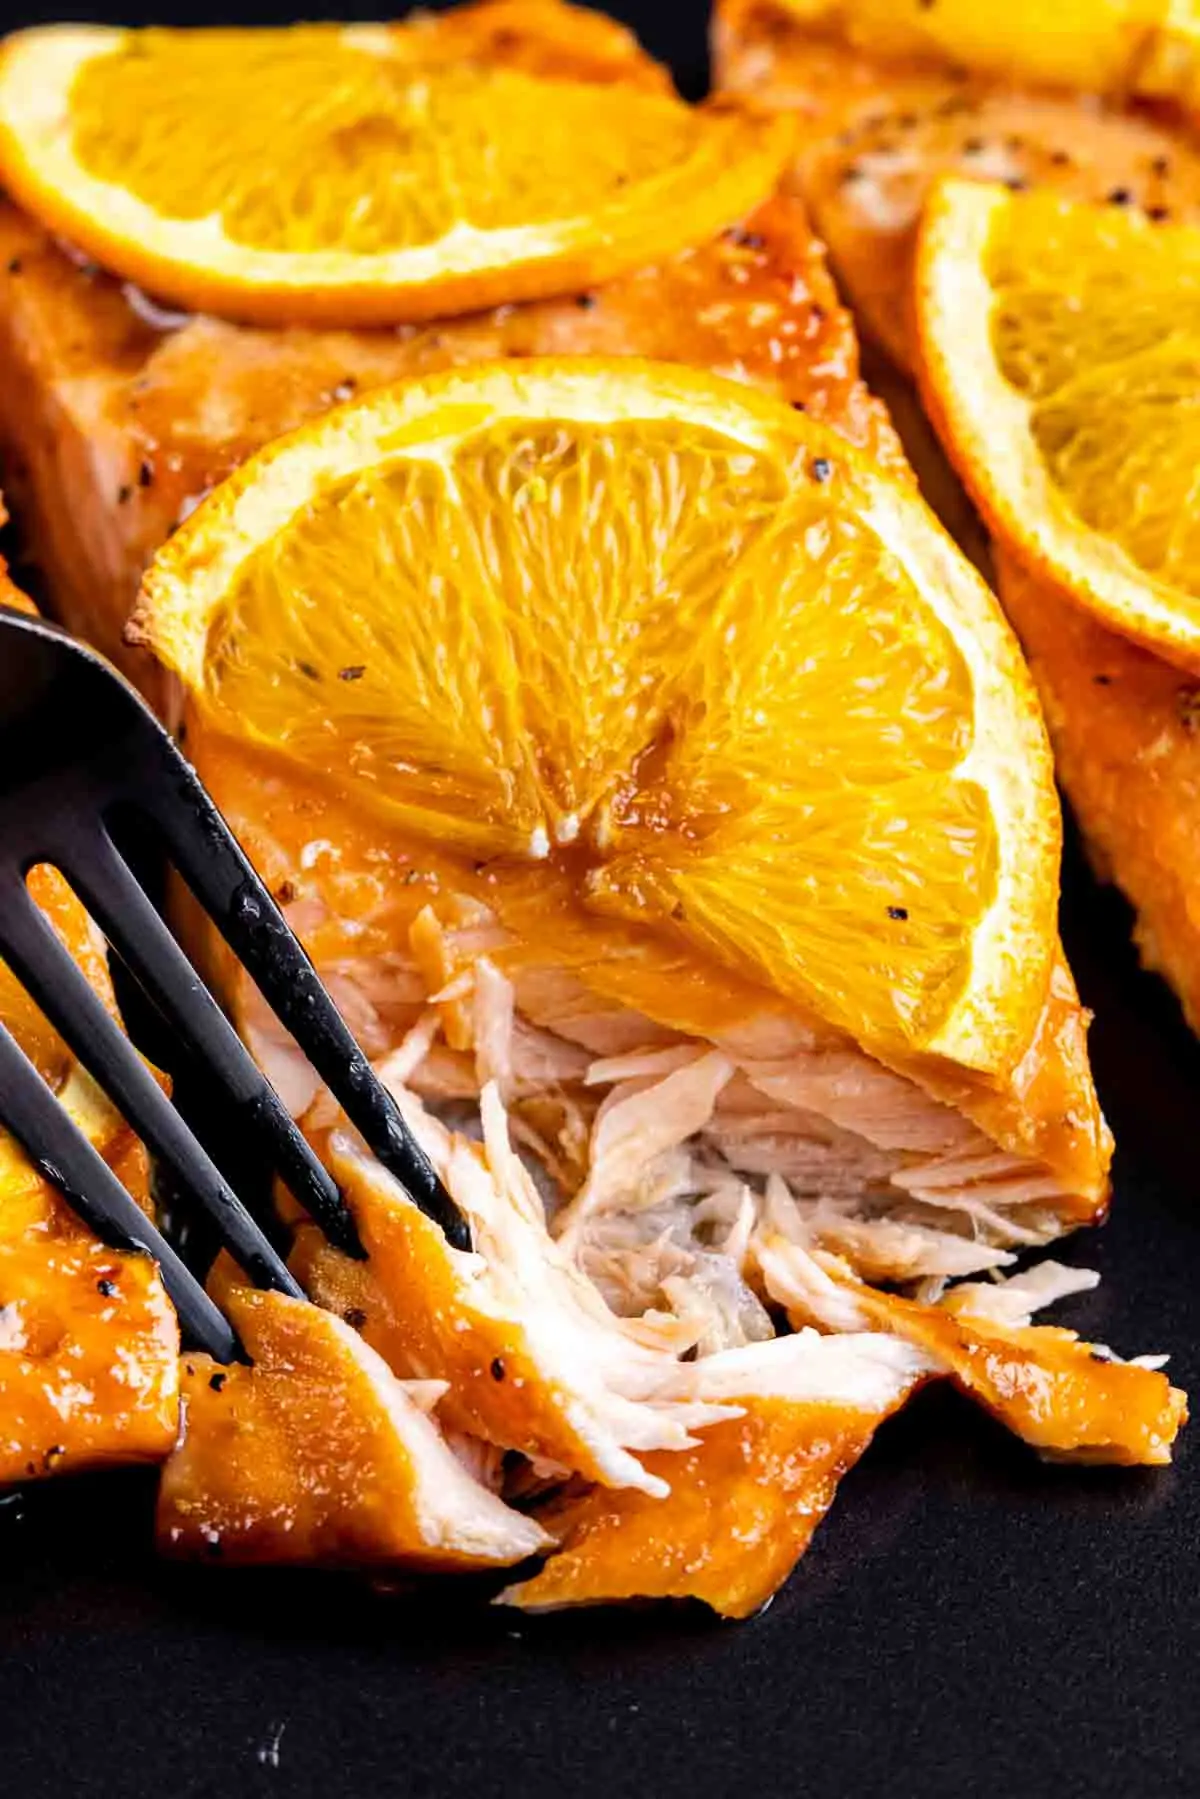 Orange Glazed Salmon fillets served with slices of orange on a black plate.